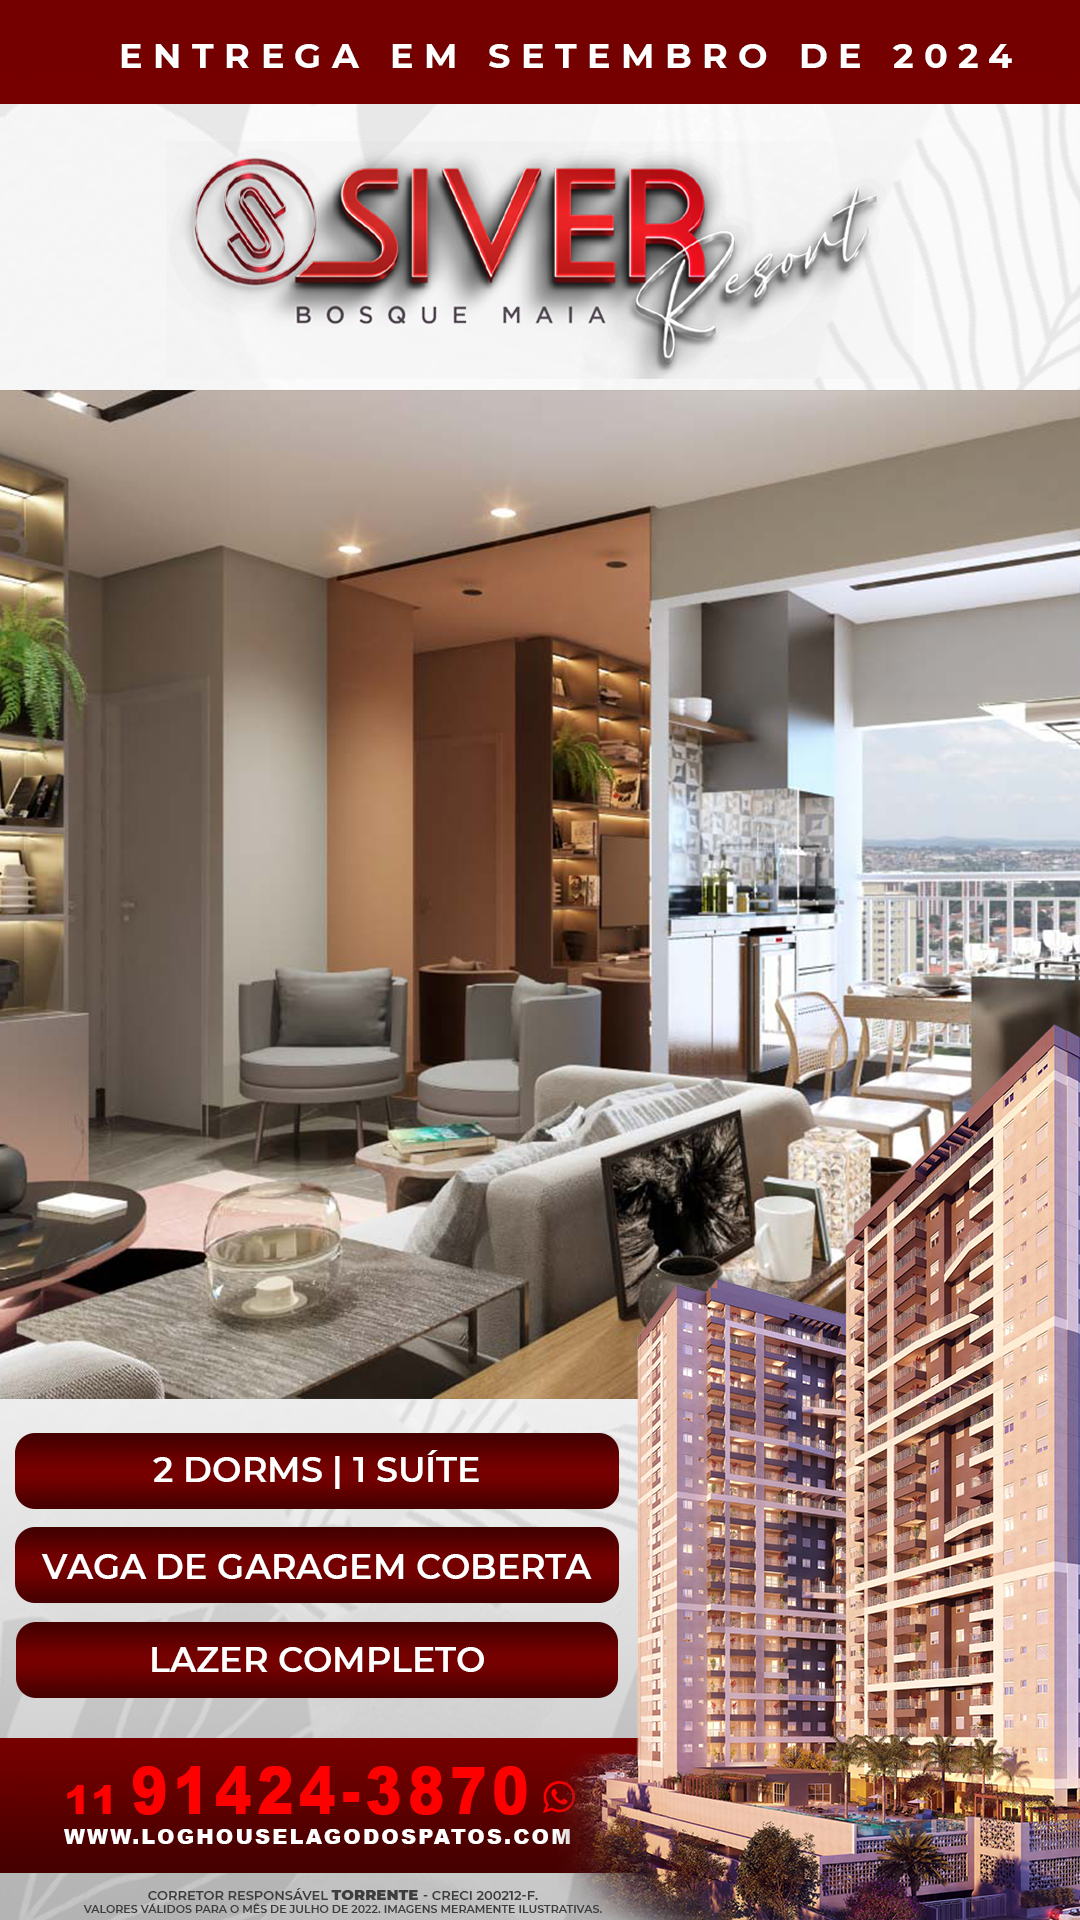 SIVER Resort Bosque Maia lançamento em Guarulhos, é a sua oportunidade de comprar um apartamento de 61, 58, 56, 45 m² ou studios de 40 e 38 m² direto com a construtora com financiamento facilitado. Excelente para investir e perfeito para morar!